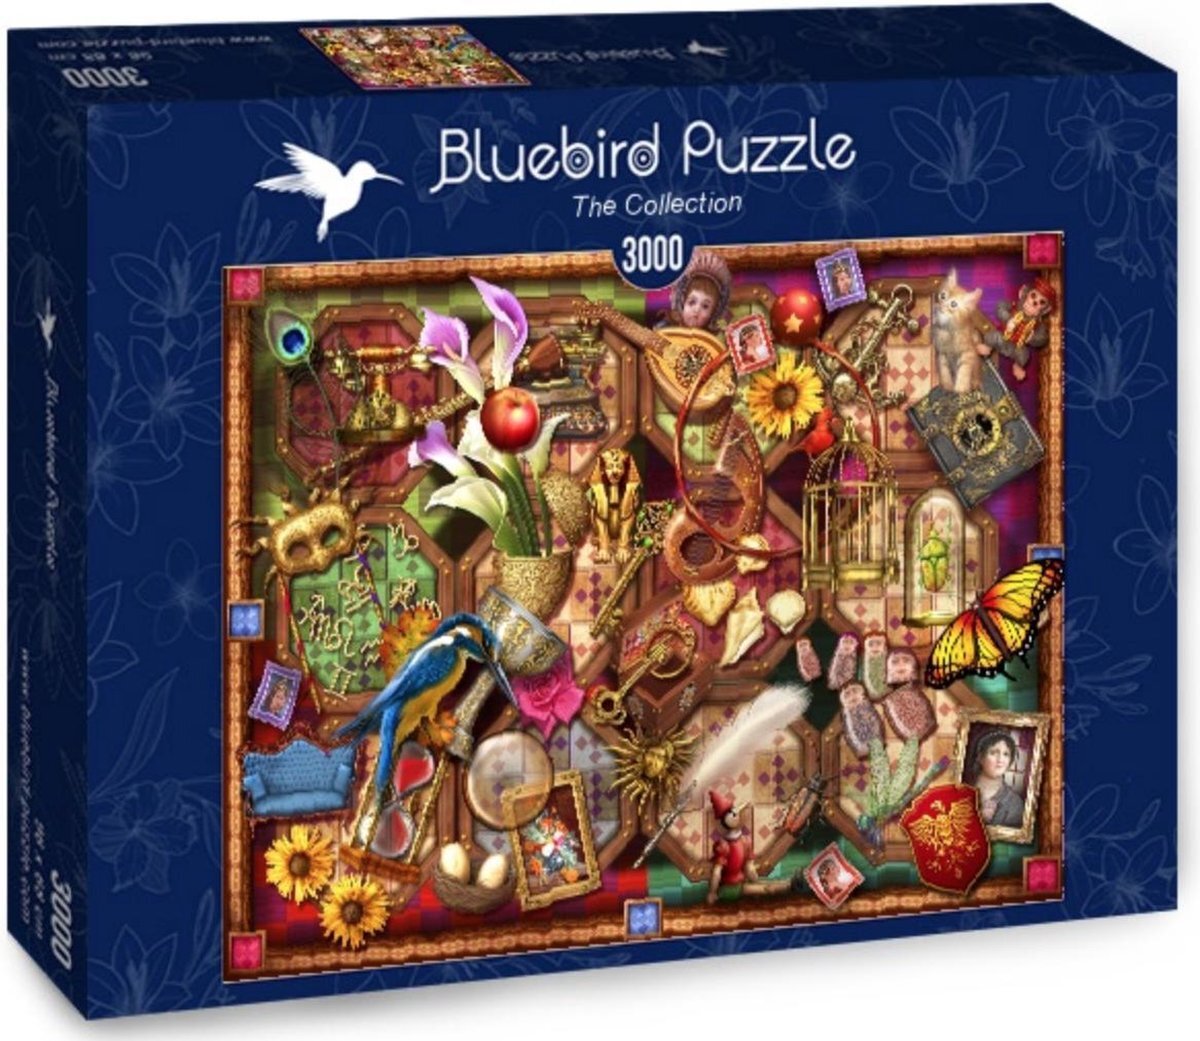 Bluebird Puzzle Ciro Marchetti legpuzzel The Collection 3000 stukjes